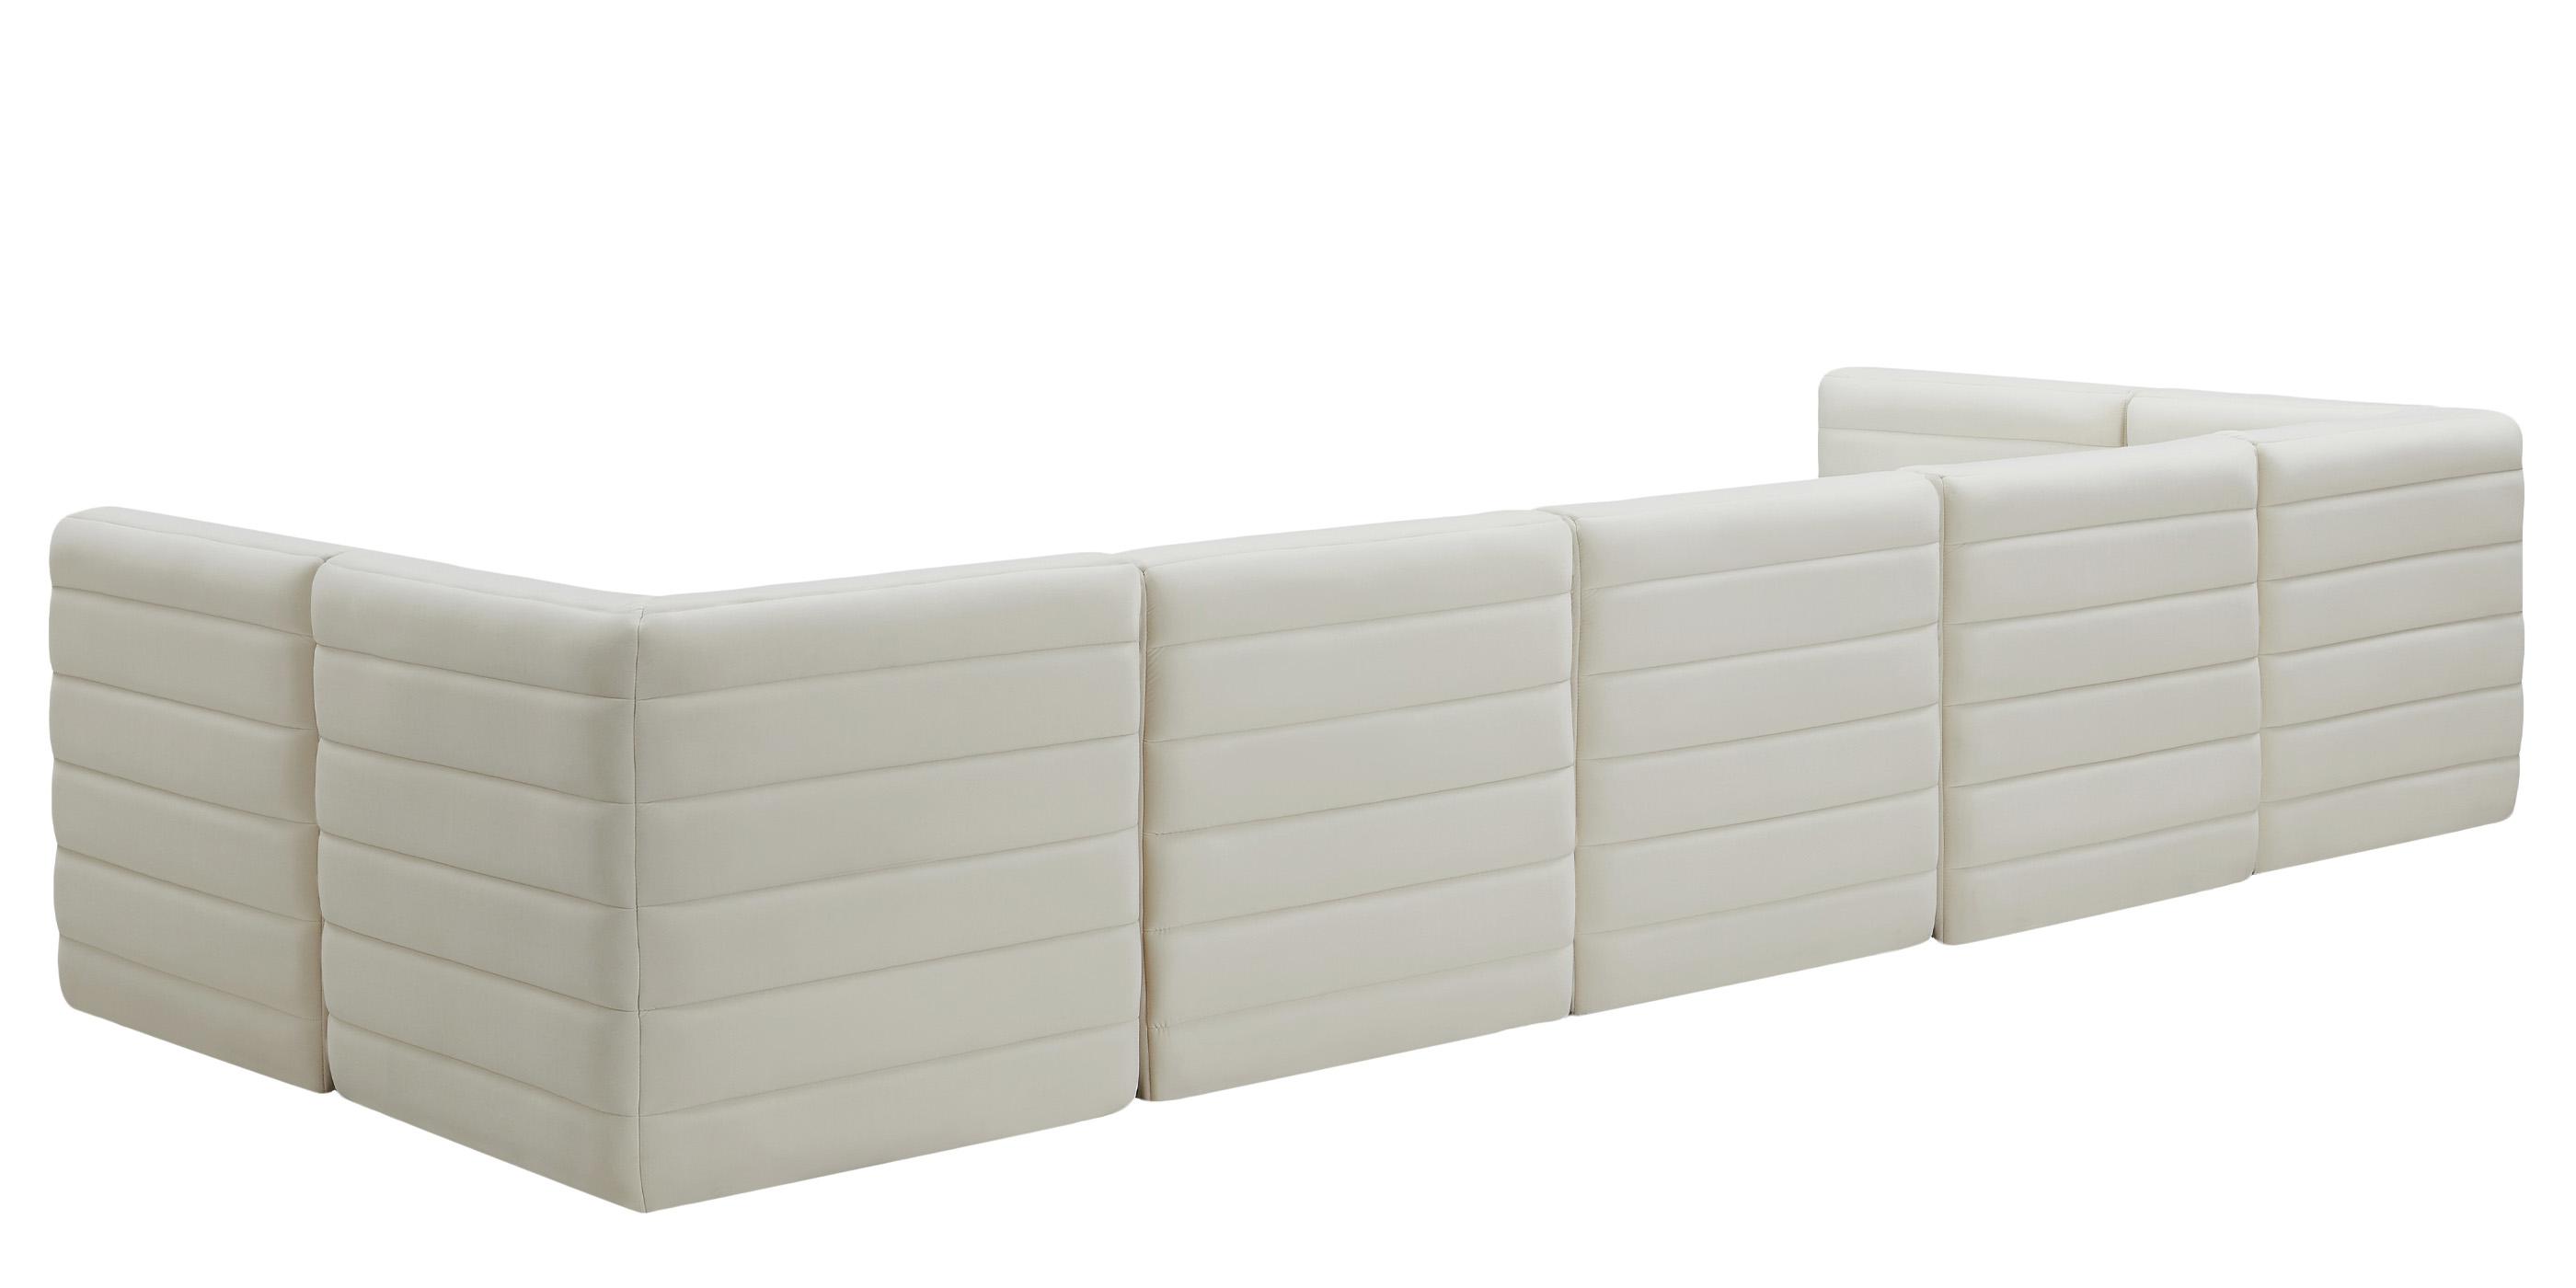 

    
Meridian Furniture Quincy 677Cream-Sec7B Modular Sectional Sofa Cream 677Cream-Sec7B
